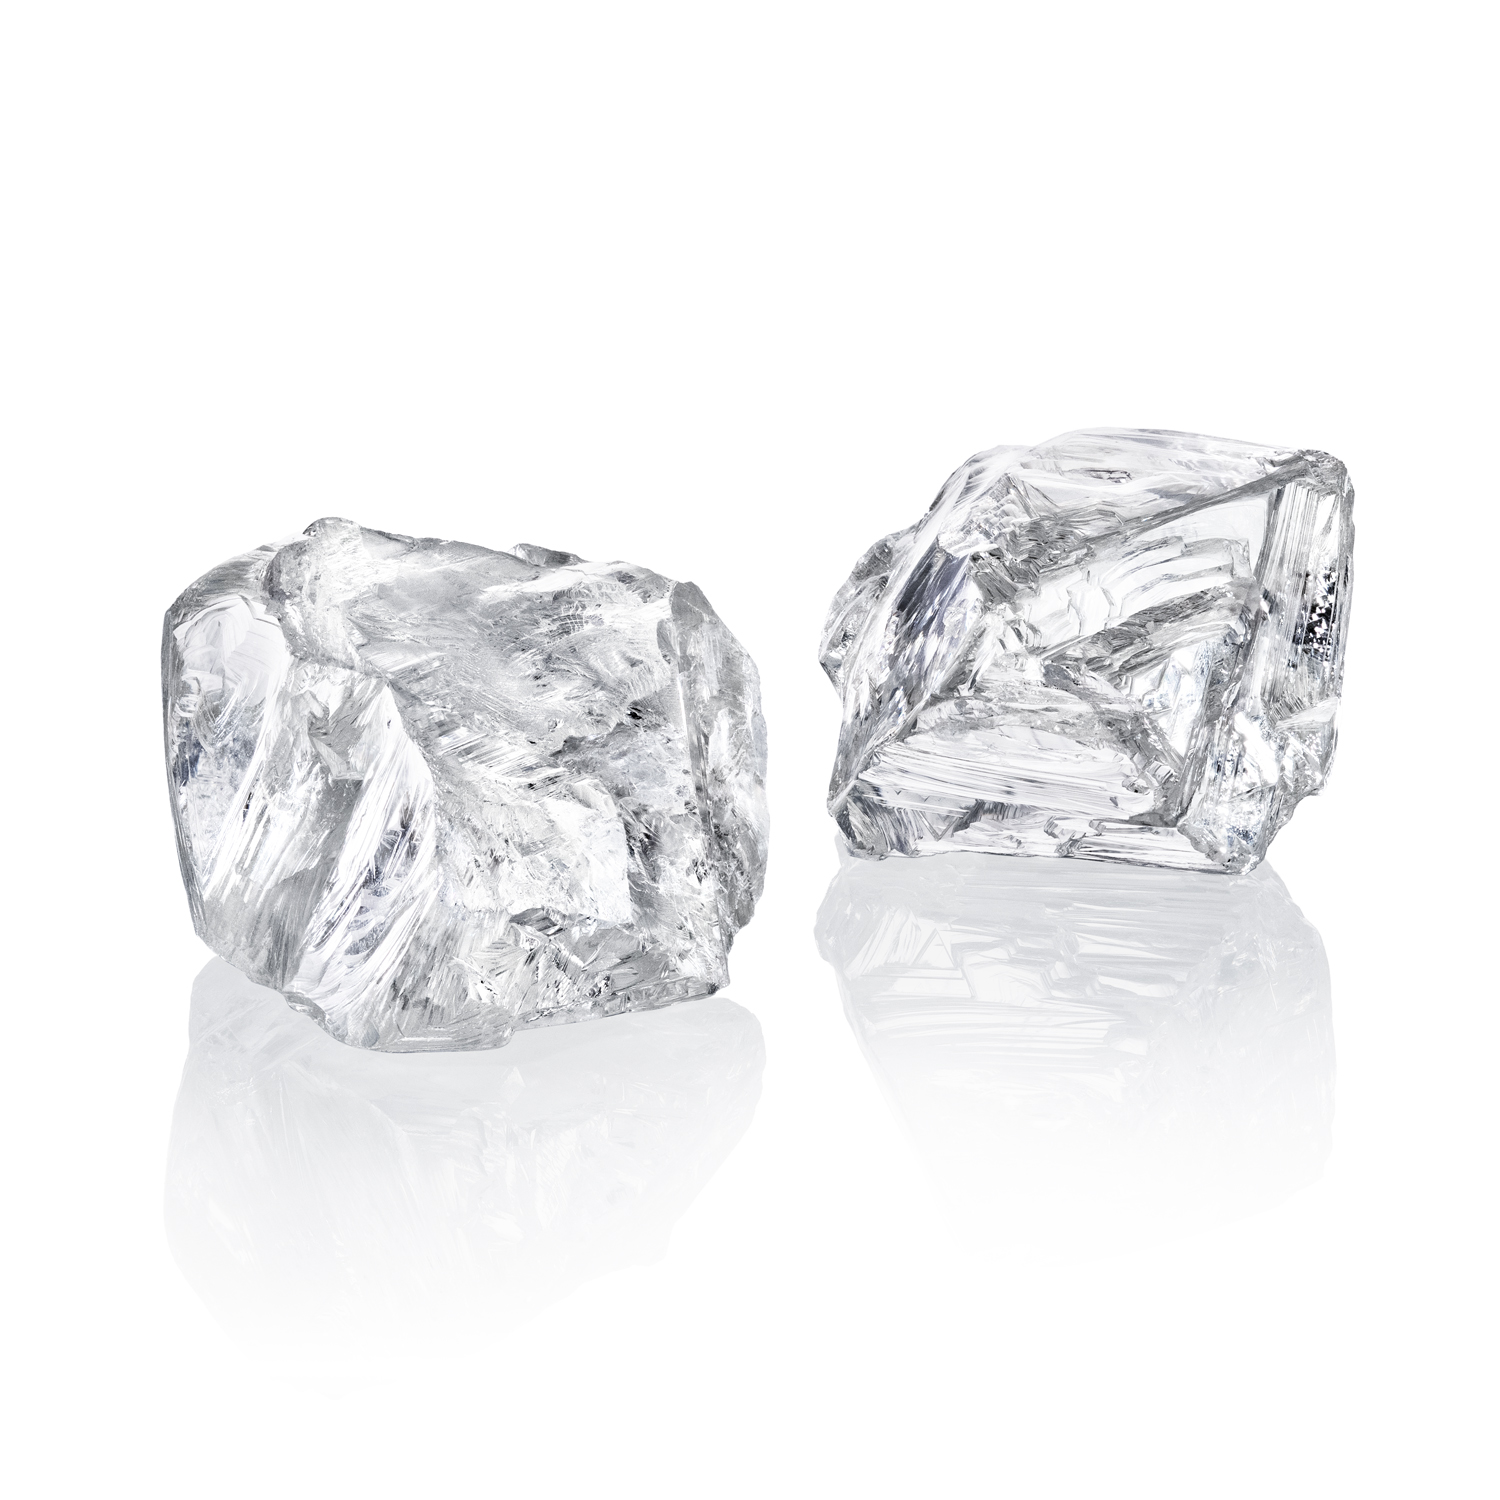 Два крупных высококачественных алмаза добыли на трубке Удачная в Якутии